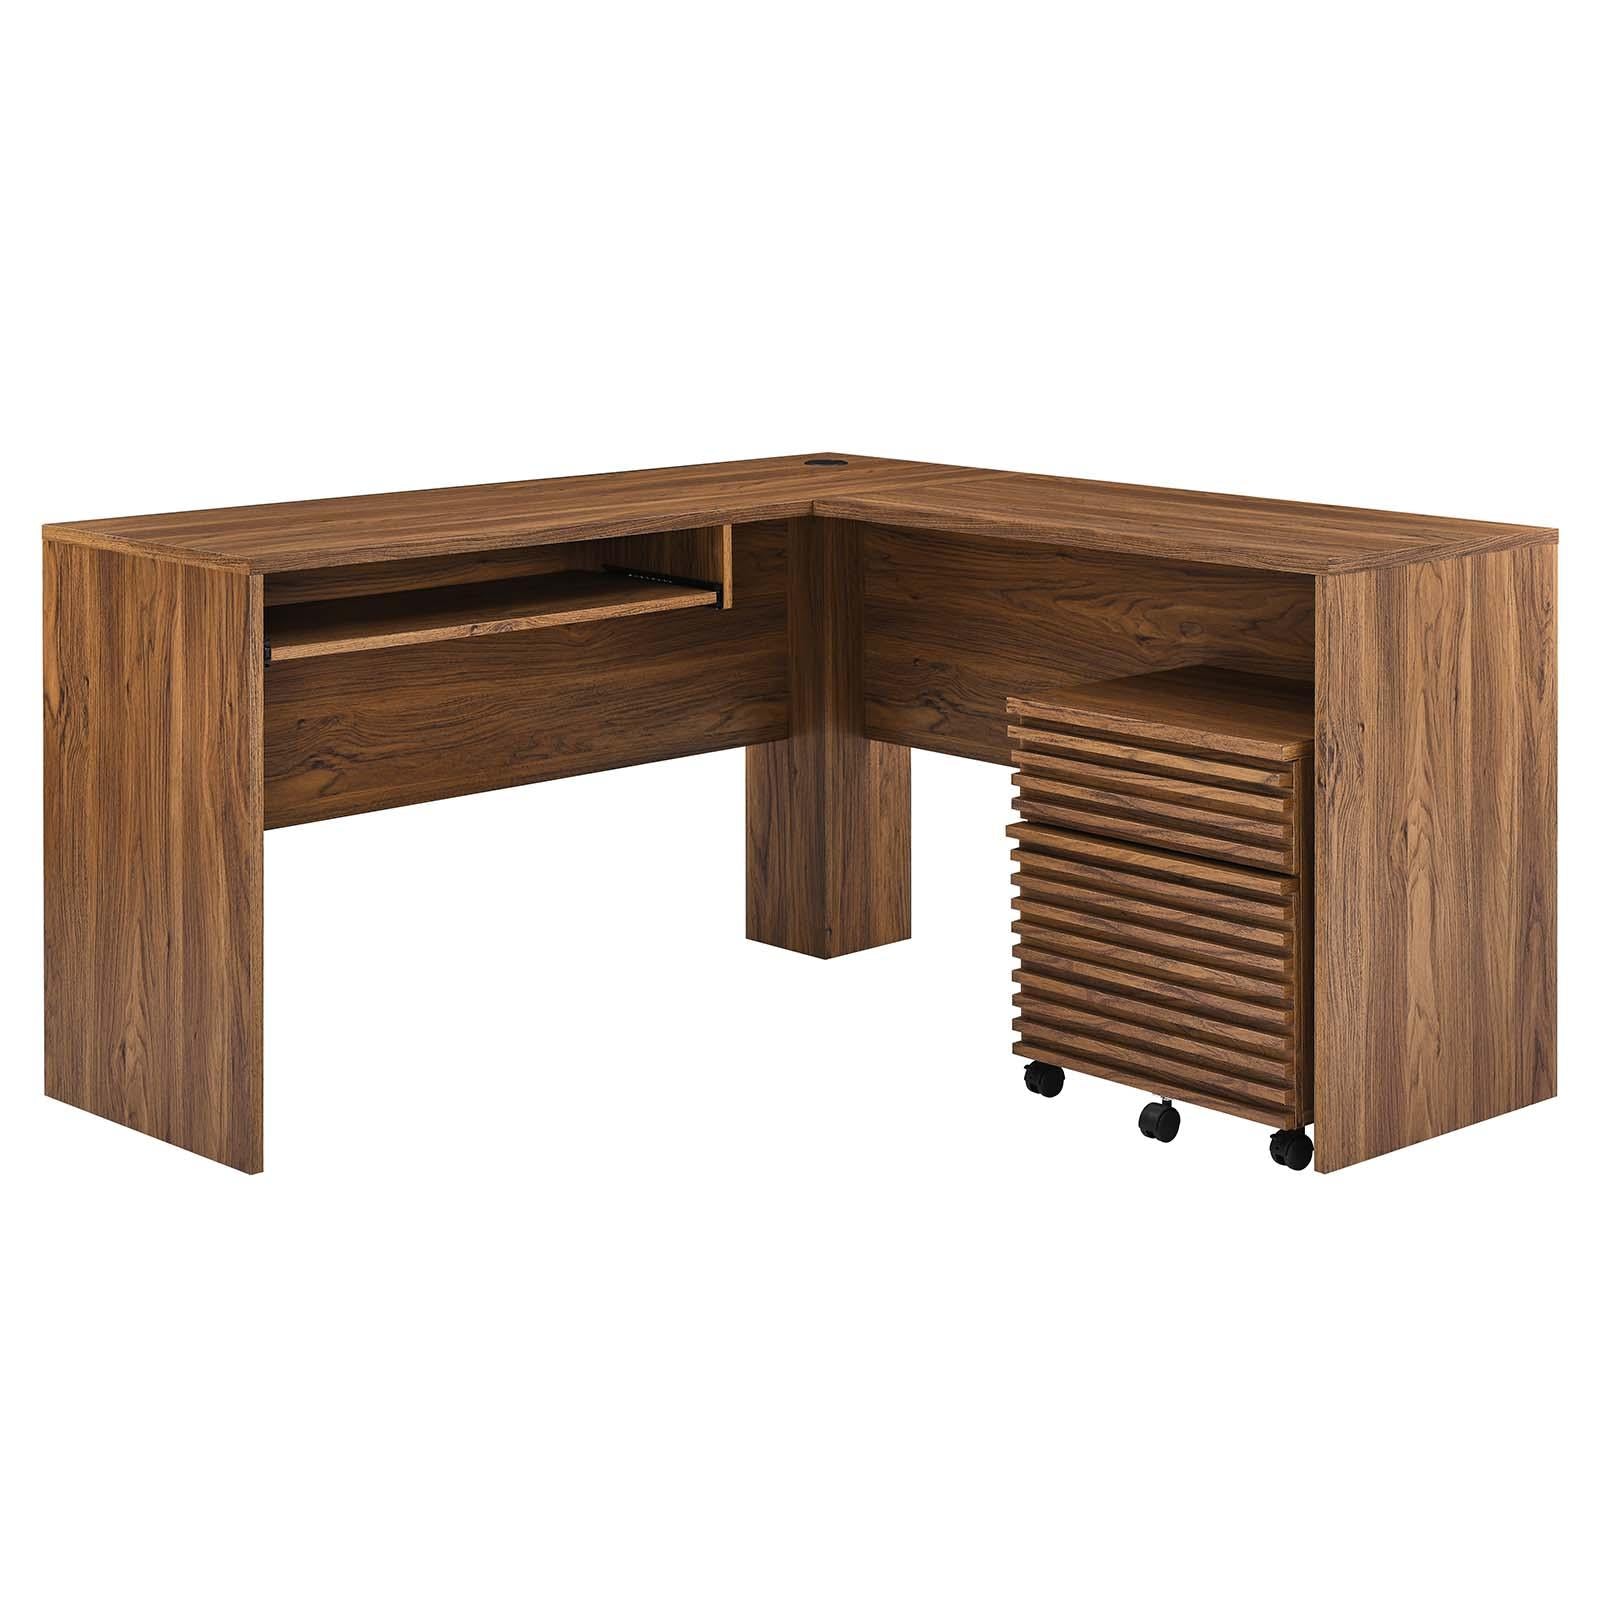 Modway Furniture Modern Render Wood Desk and File Cabinet Set - EEI-5821